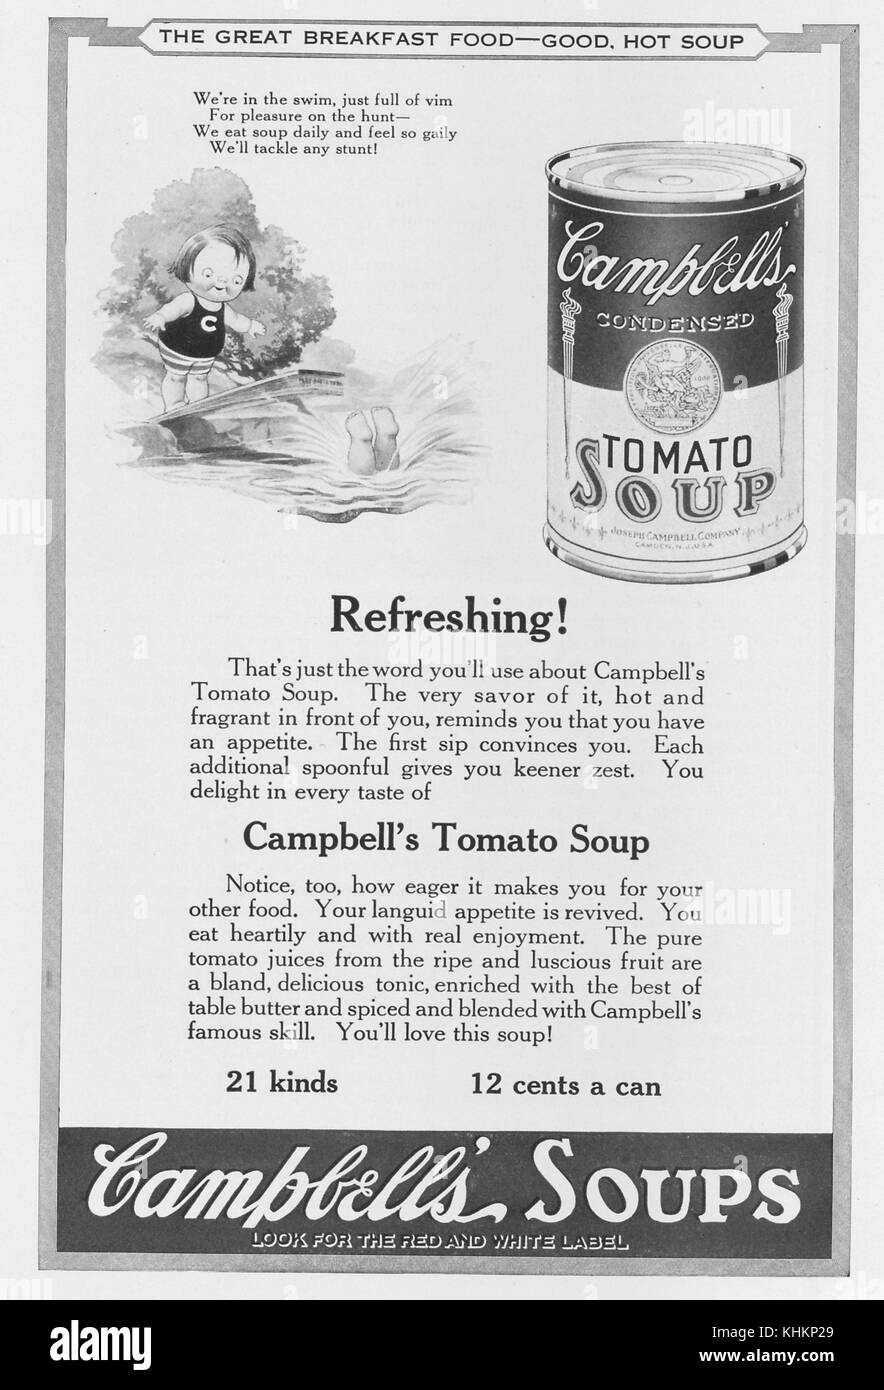 Publicité pleine page pour Campbell's condensed soupe de tomate, avec un dessin d'un enfant de plonger dans l'eau et une petite fille à regarder, avec le slogan "la grande nourriture du petit déjeuner - bon, soupe chaude', publié dans le National Geographic Magazine, juillet, 1922. Banque D'Images